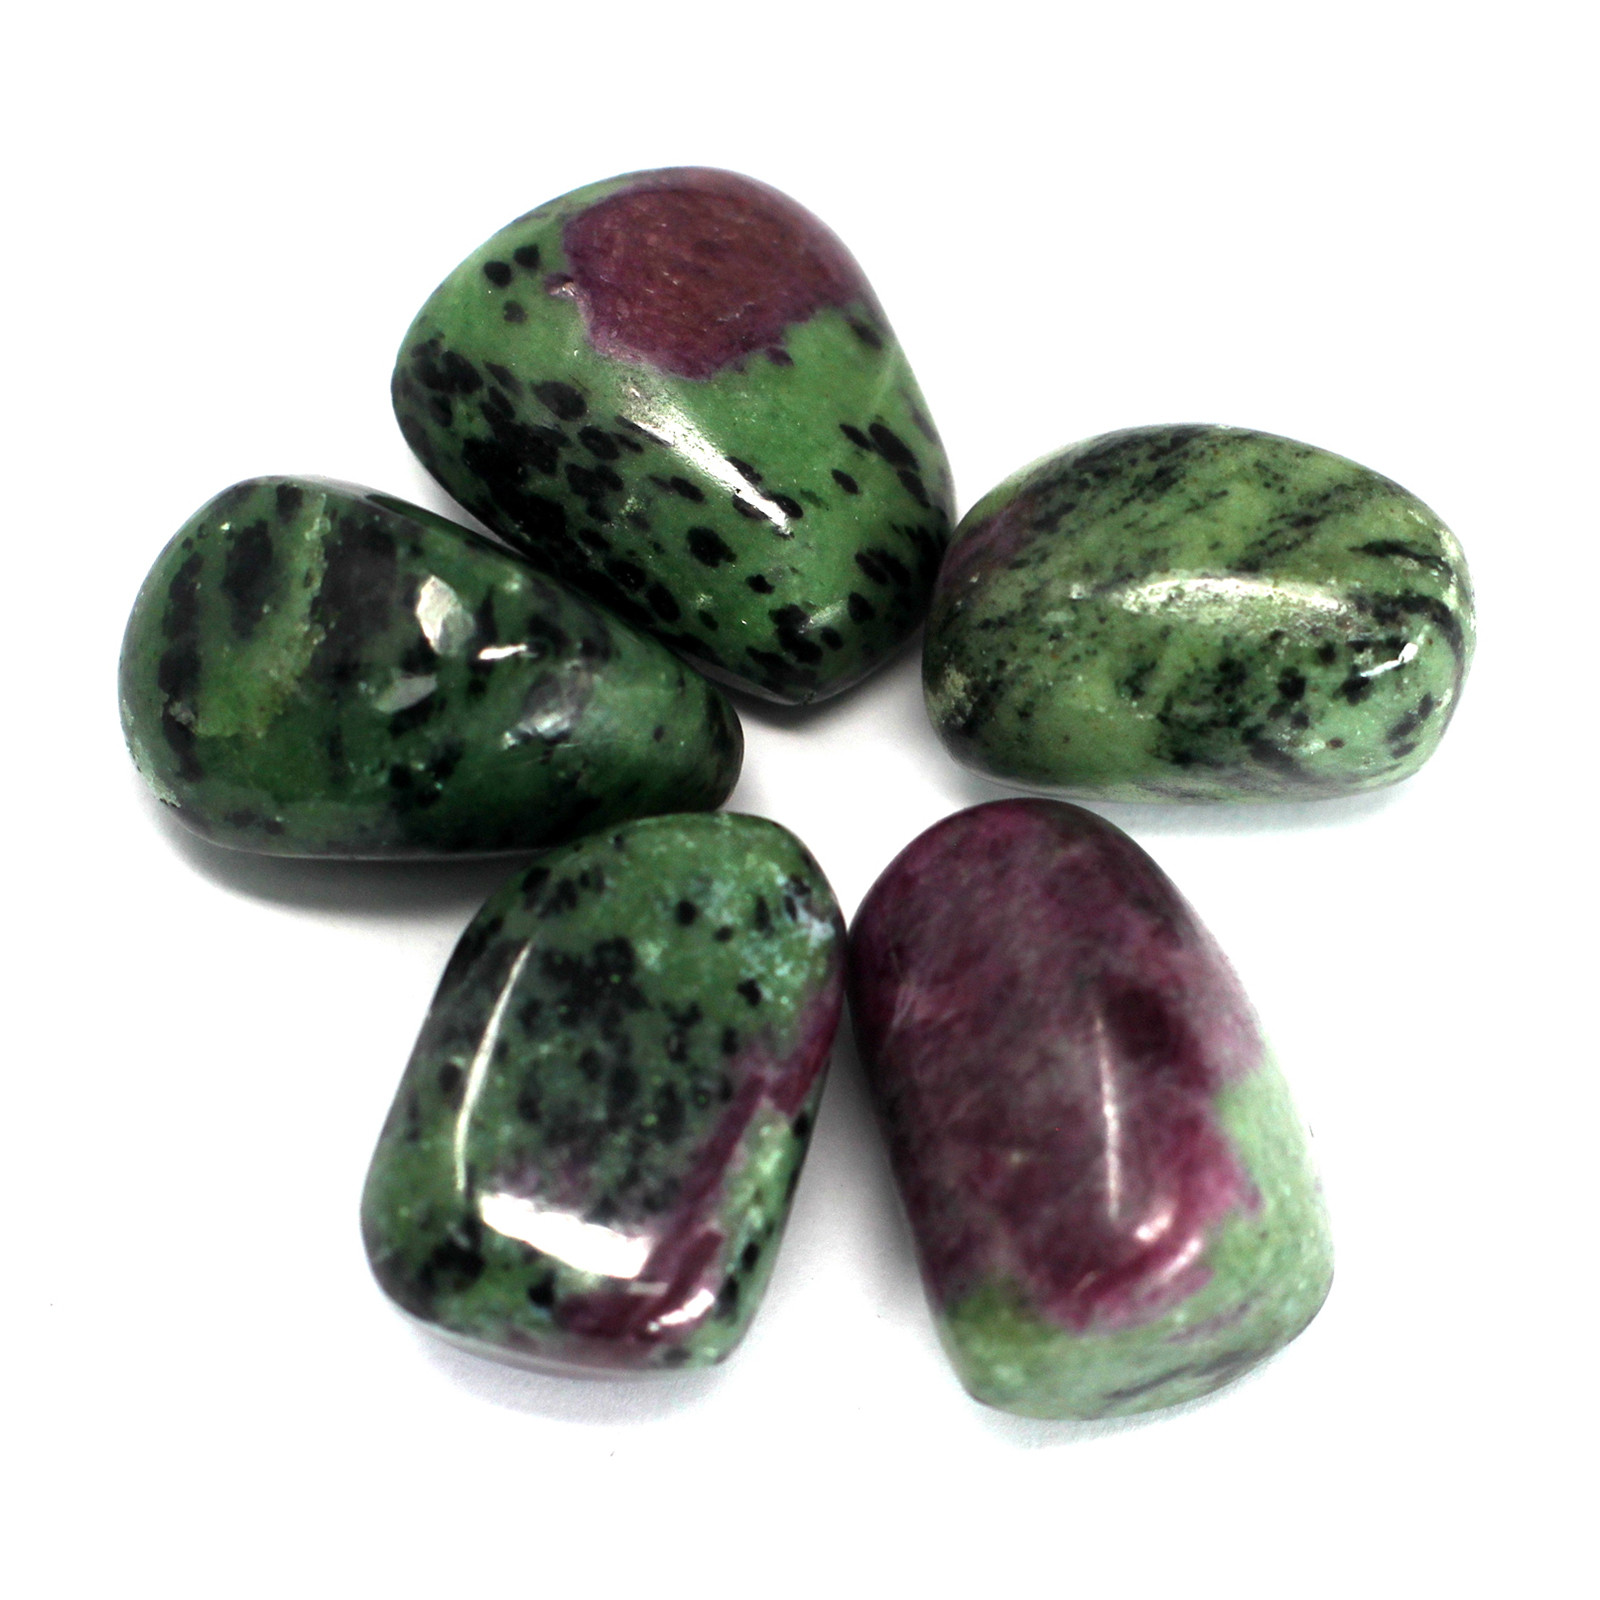 4 x Premium Tumble Stones - Ruby Zoisite